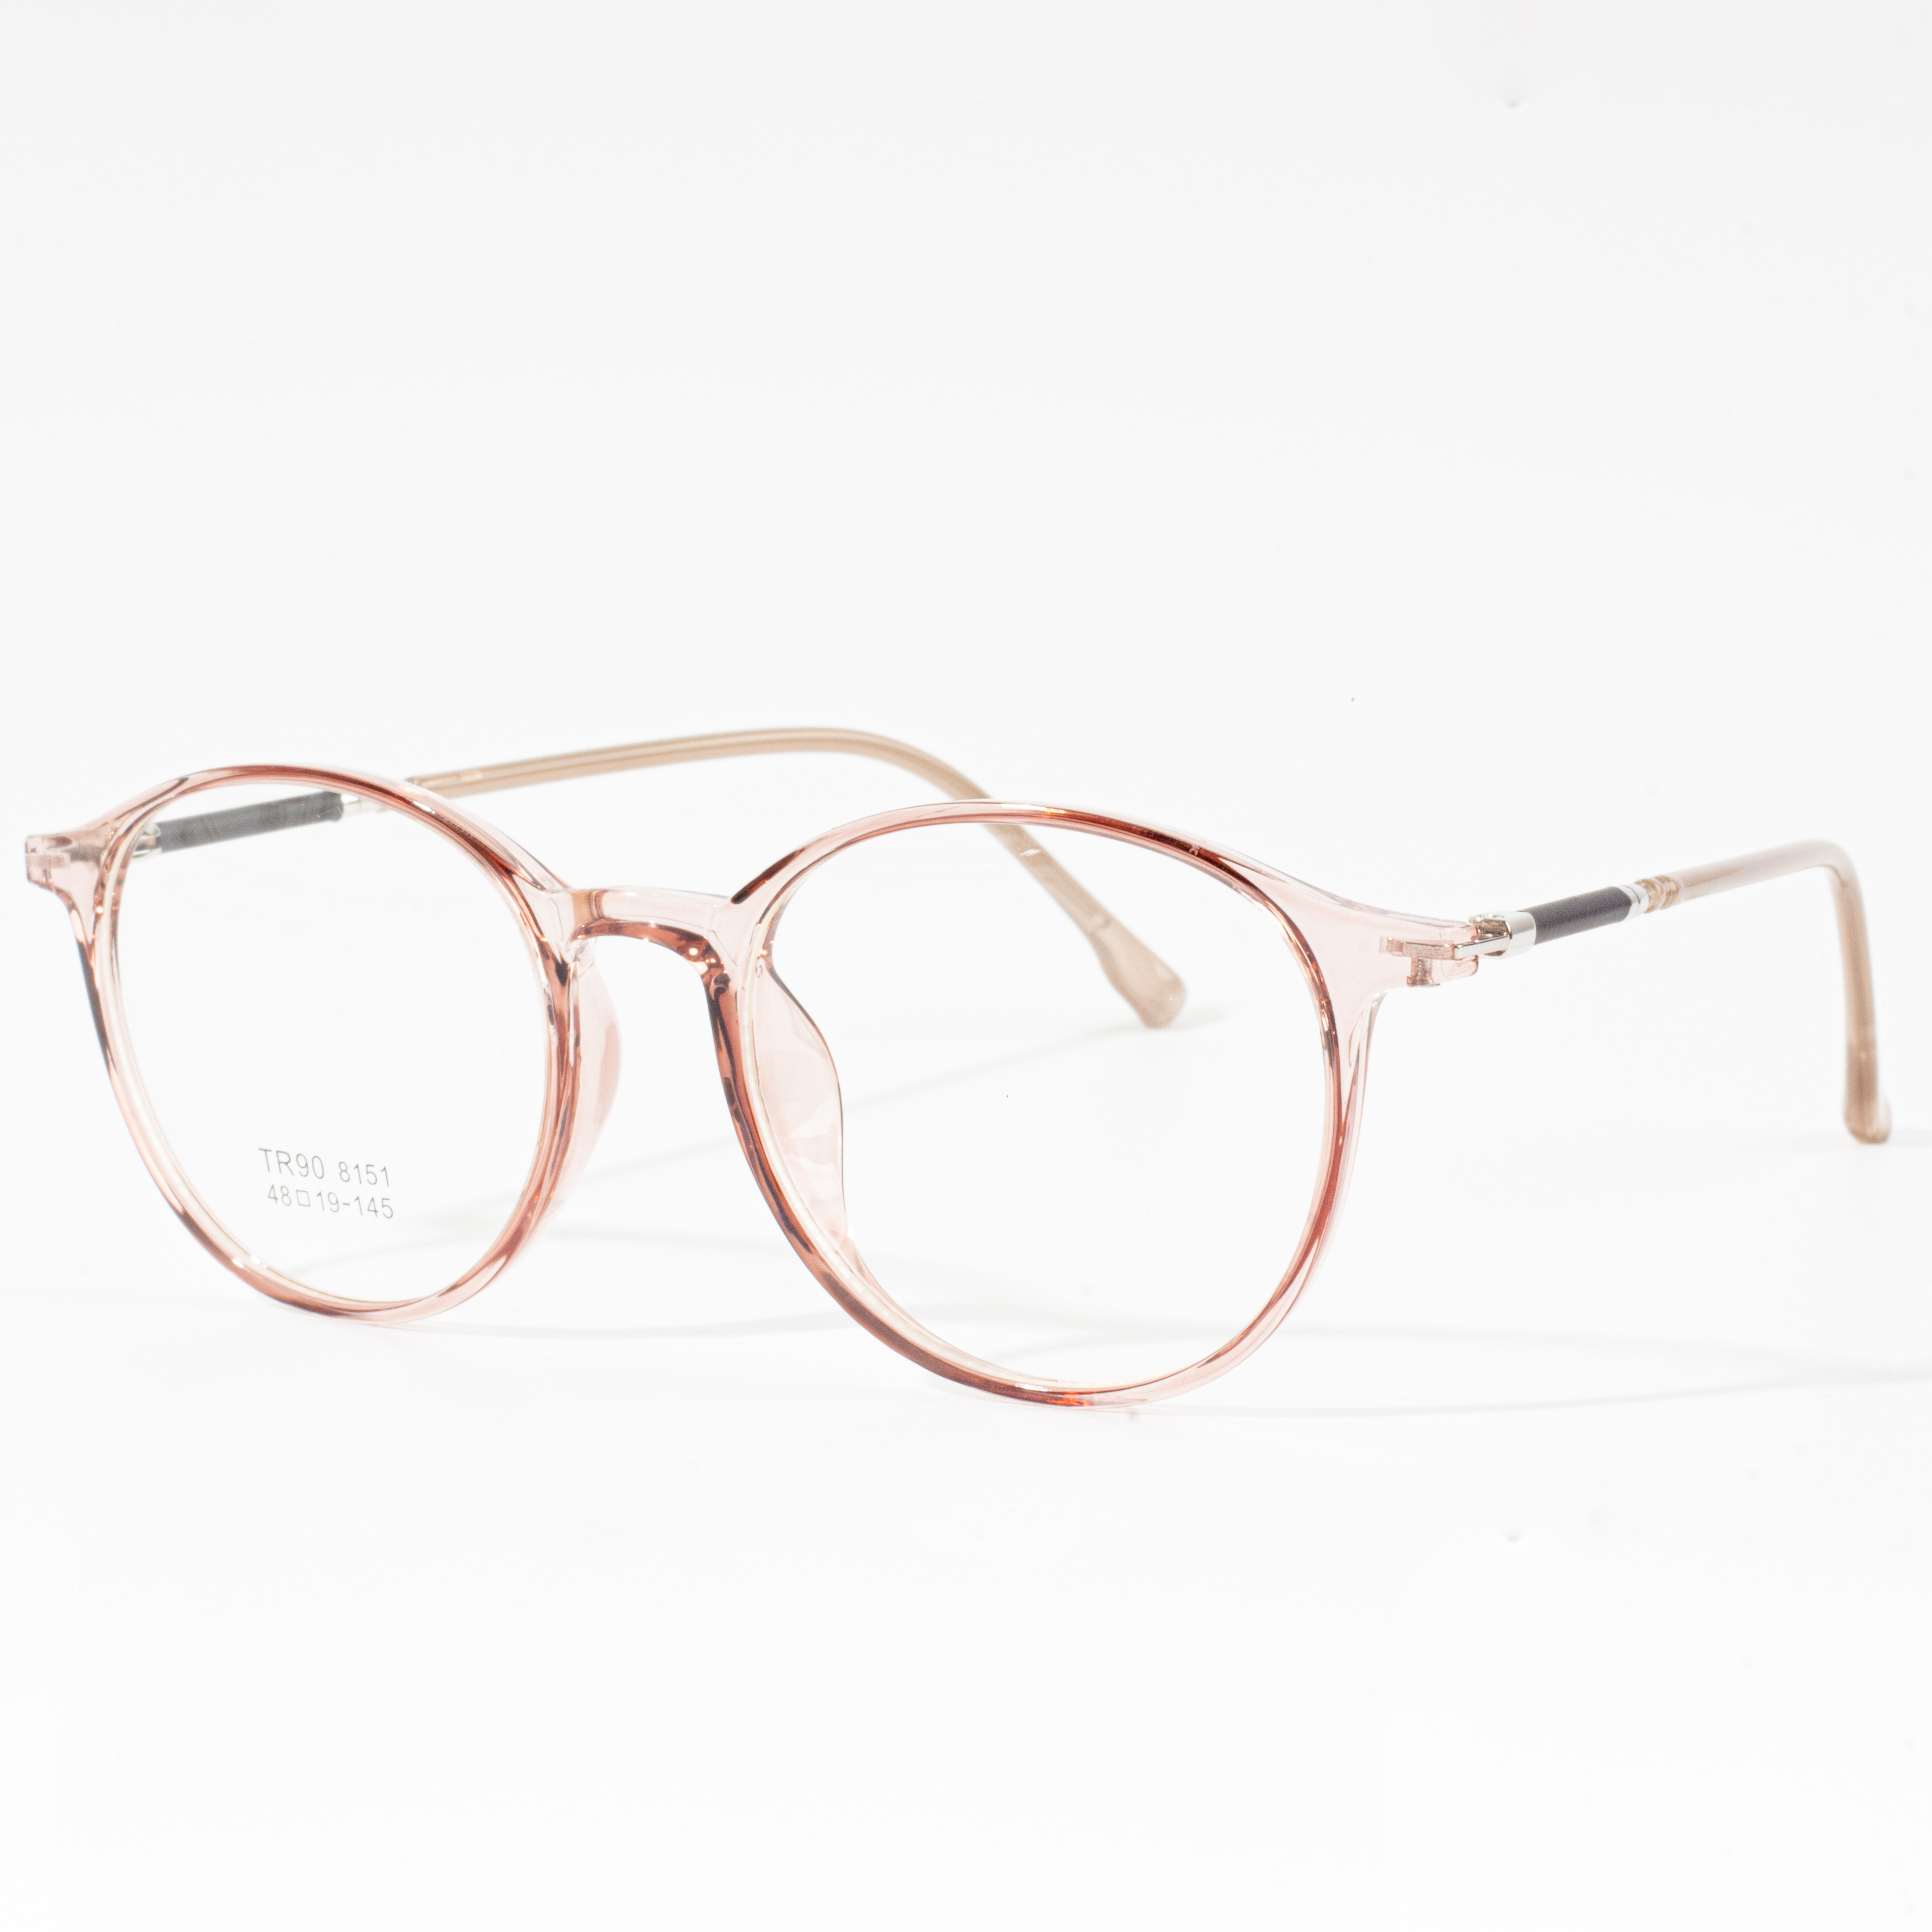 Designerinnfatninger for menn og kvinner - Eyeglasses.com 广告· https://www.eyeglasses.com/ (888) 896-3885 Kjøp designerinnfatninger fra verdens beste brillemerker til halvparten av utsalgsprisene i dag.